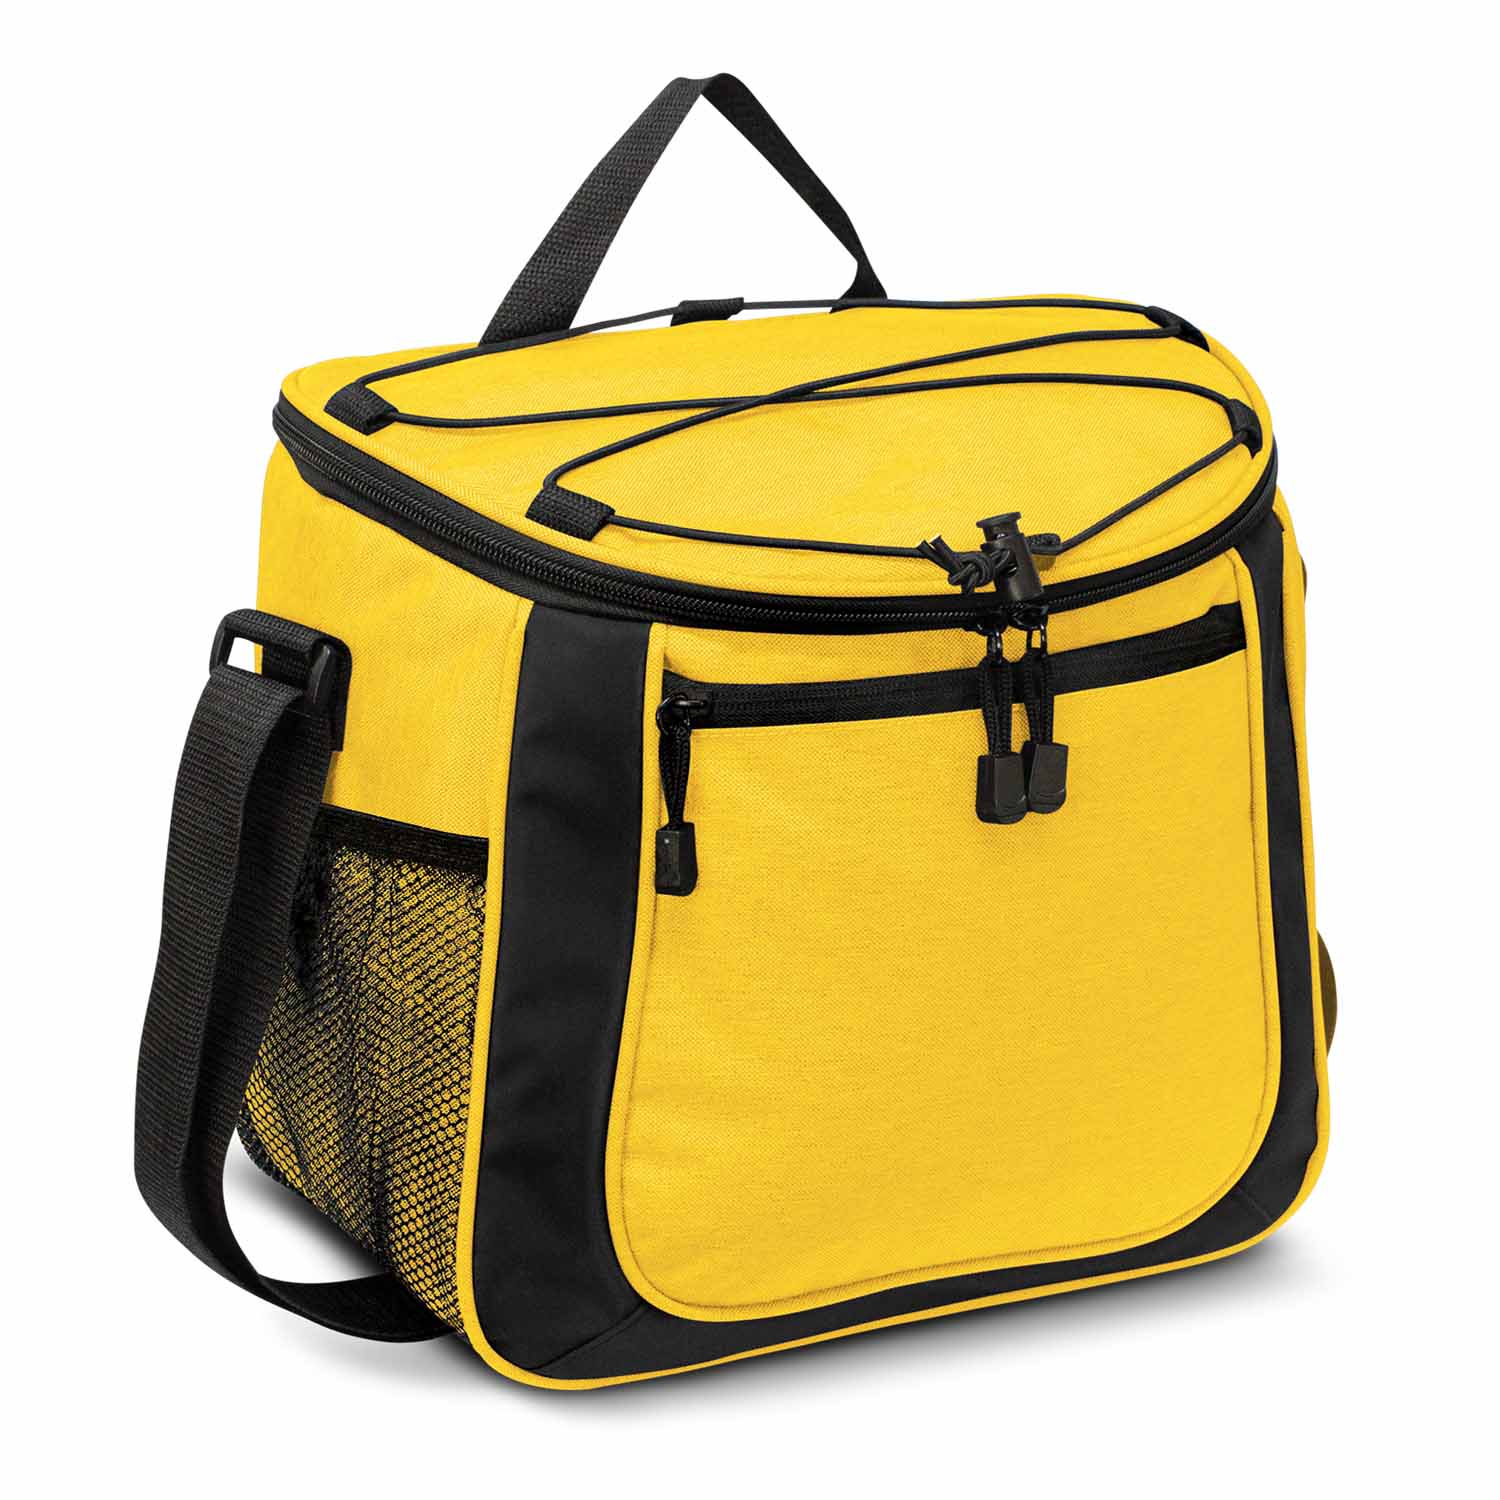 Custom Yellow Aspiring Cooler Bags Online in Perth